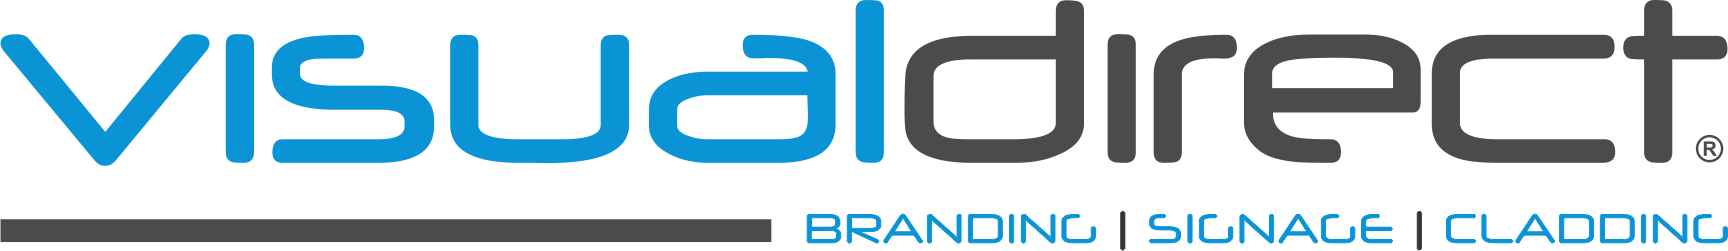 Visual-Direct-Company-logo